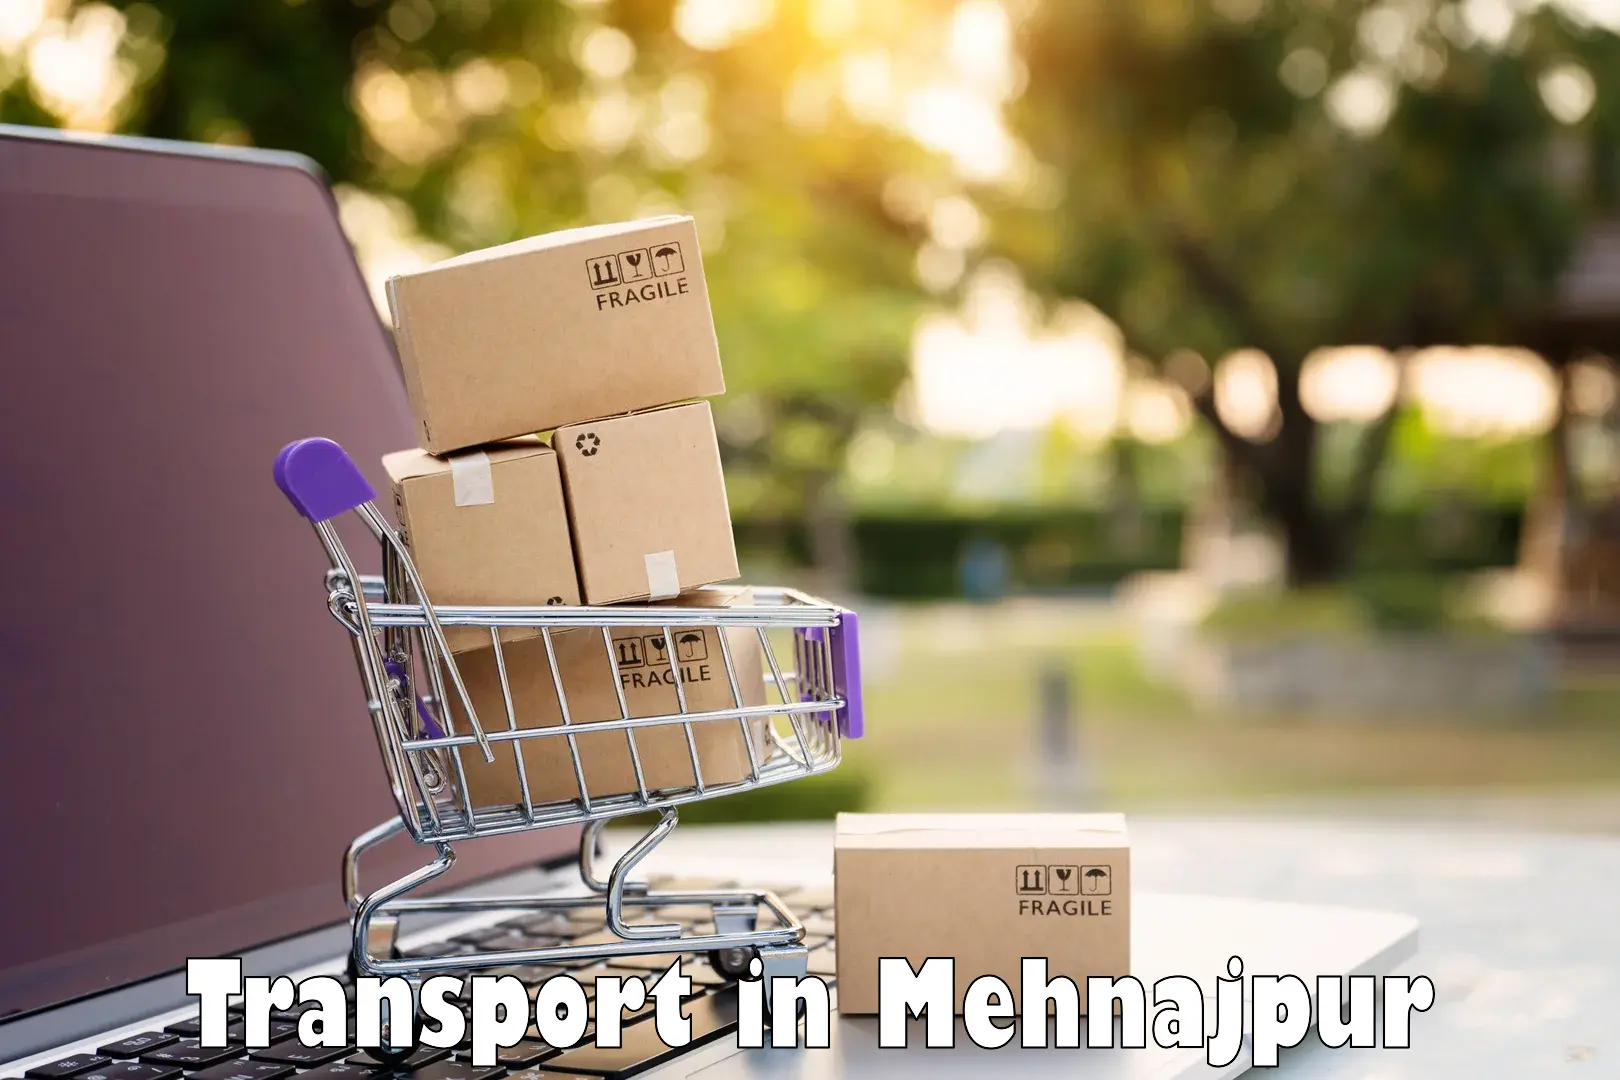 Interstate goods transport in Mehnajpur